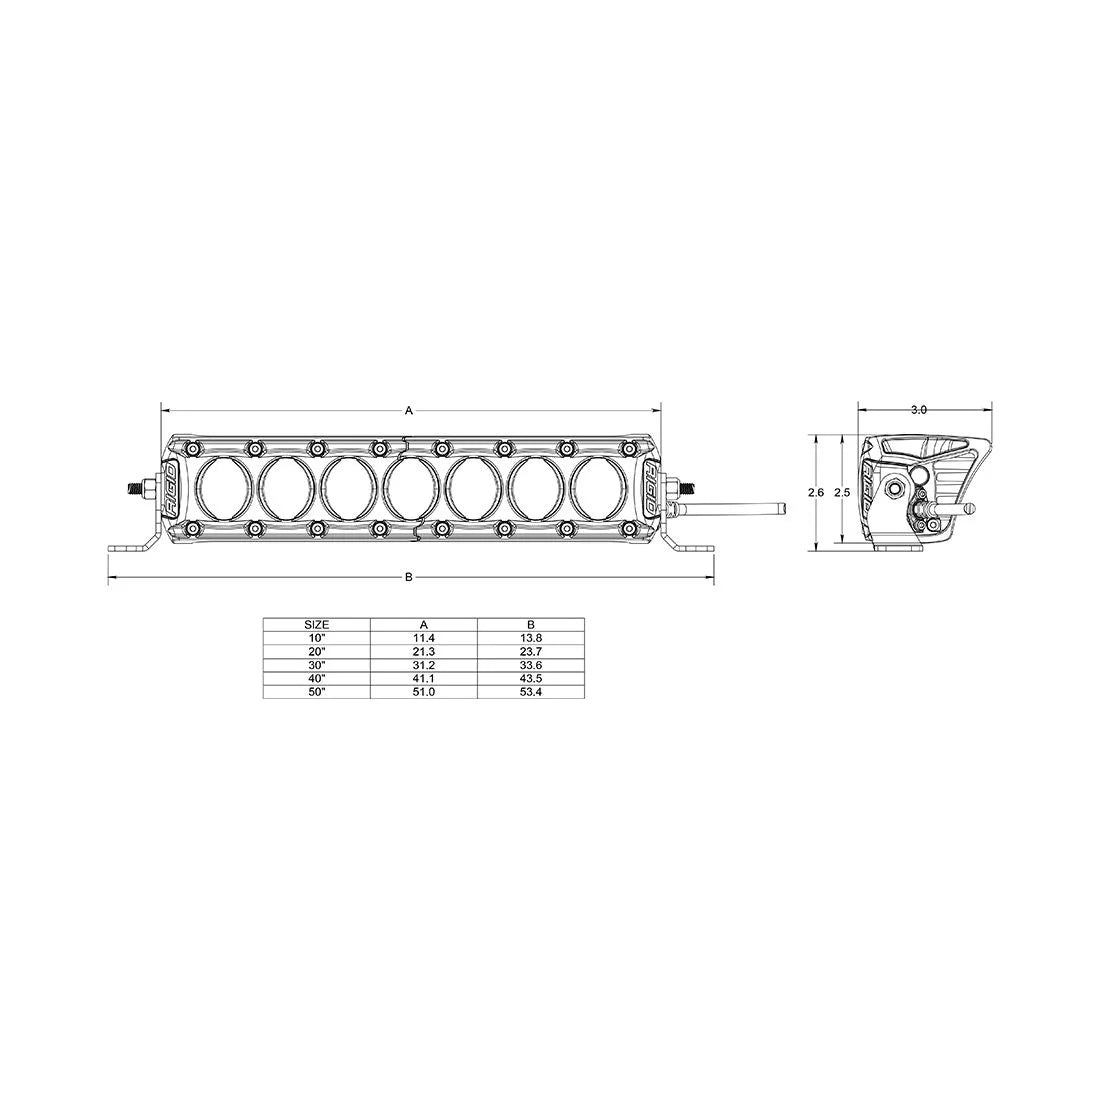 RIGID Industries Revolve Light Bar with White Backlight (10"-50" Lightbar Variations)